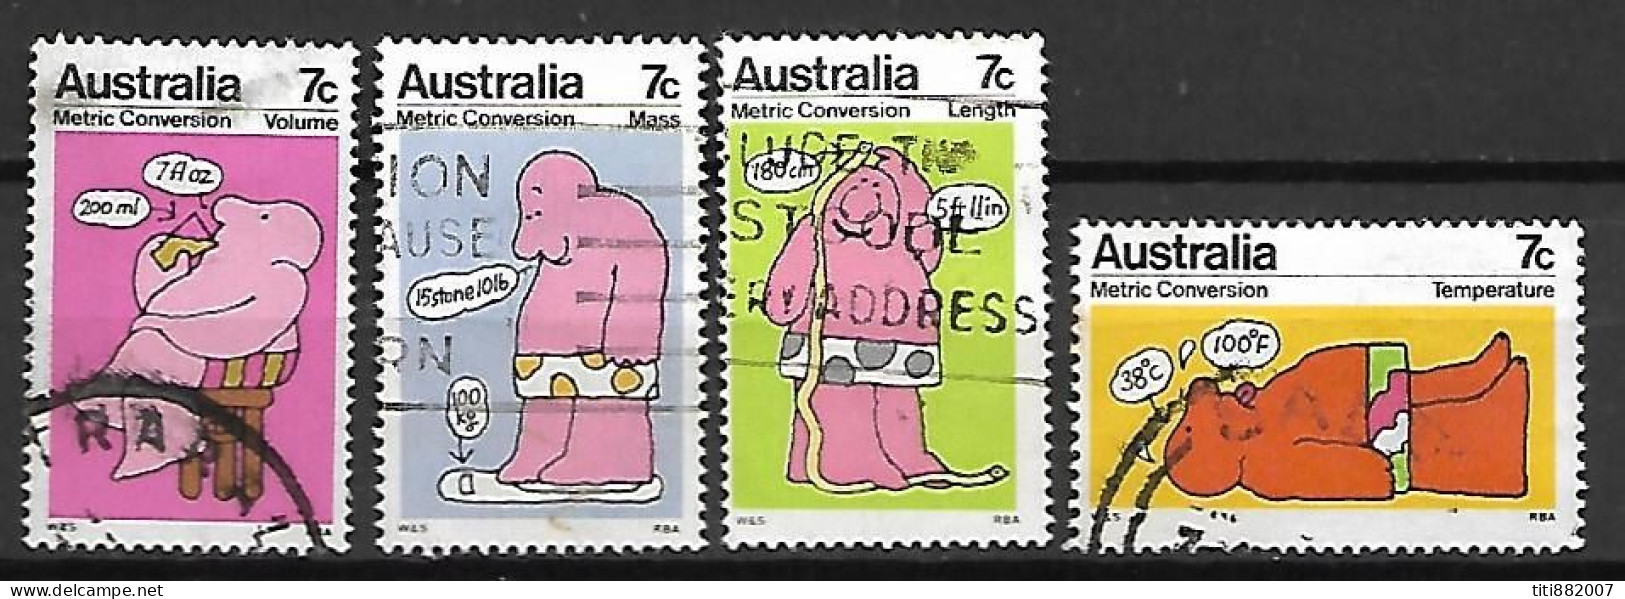 AUSTRALIE   -  1973.   Métric Conversion .   Série Complète - Used Stamps